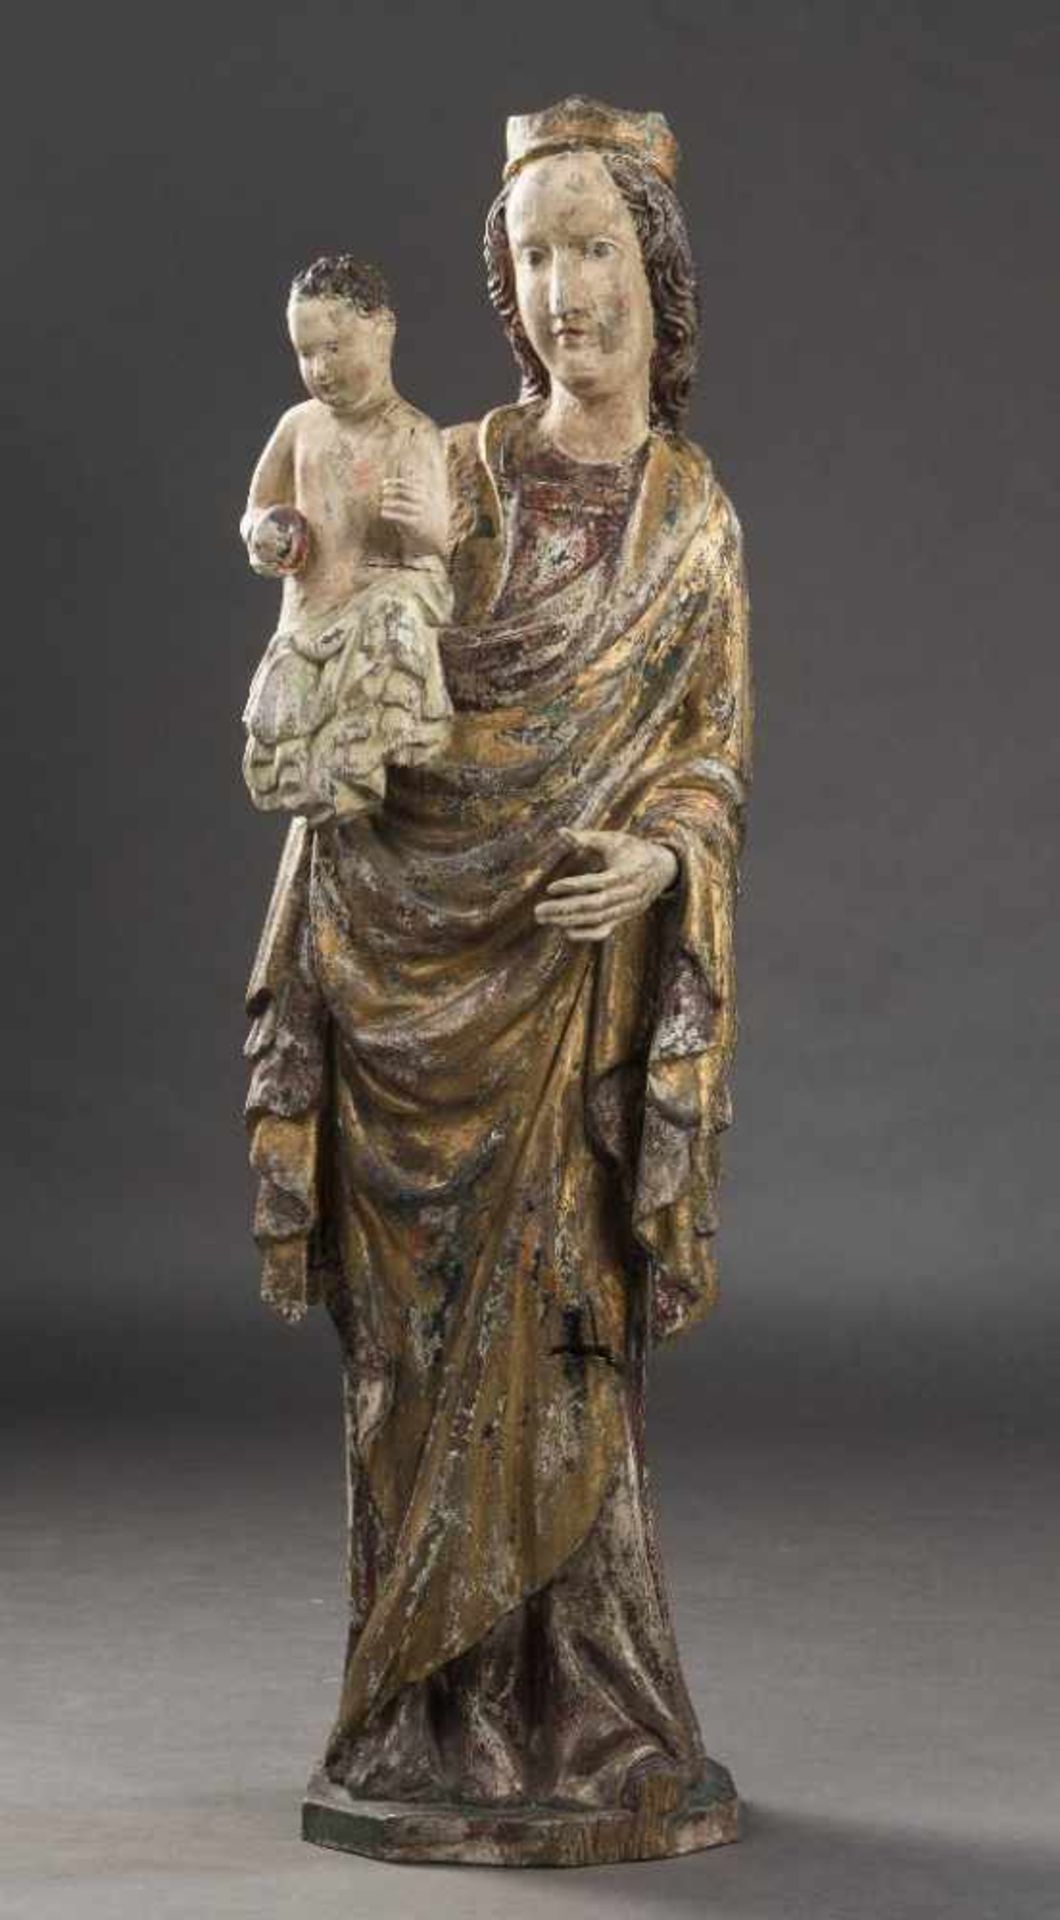 Madonna mit Kind im gotischen Stil. Holz, polychrom gefasst und vergoldet. 20. Jh. H 110 cm- - -27.